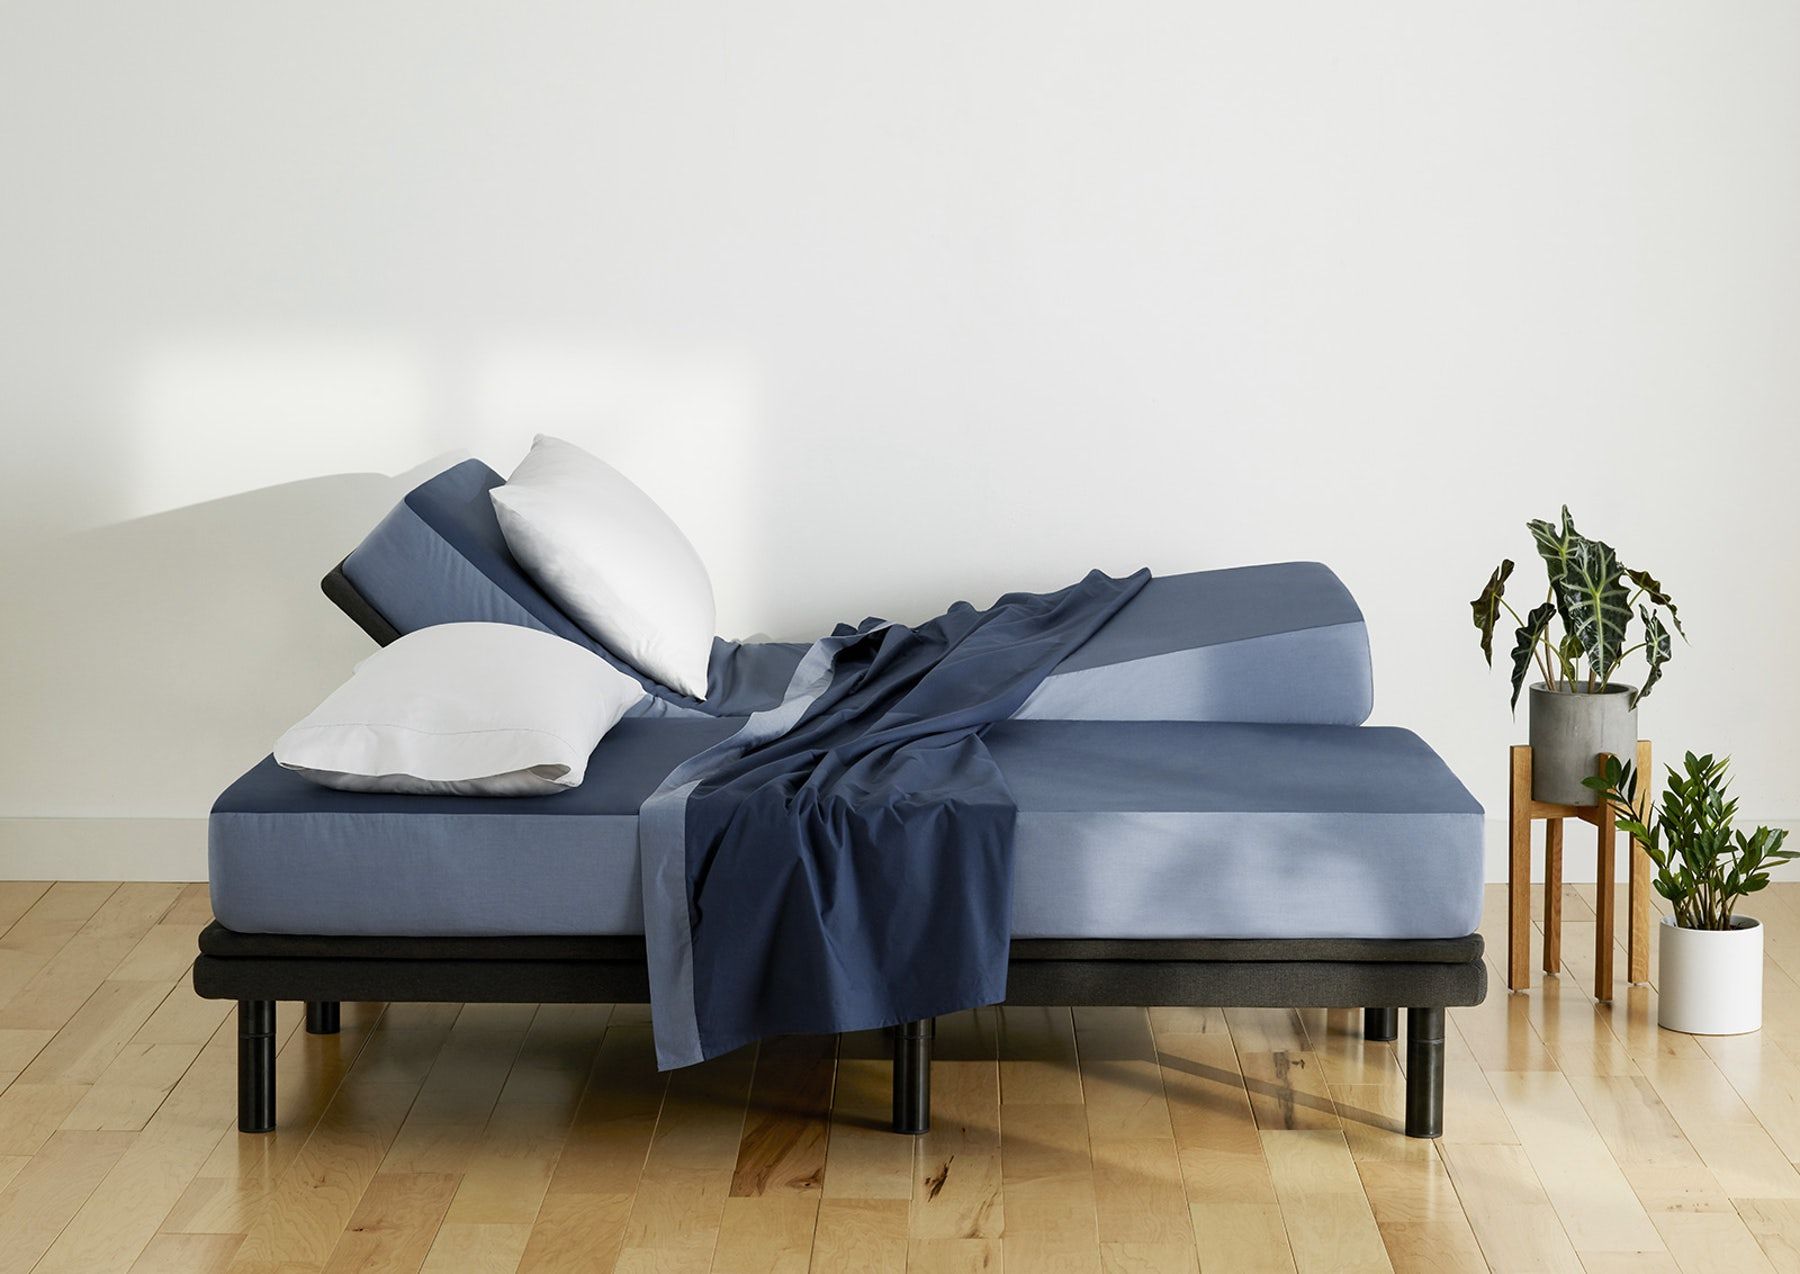 6 Best Adjustable Beds Top Adjustable Mattresses And Bed Frames